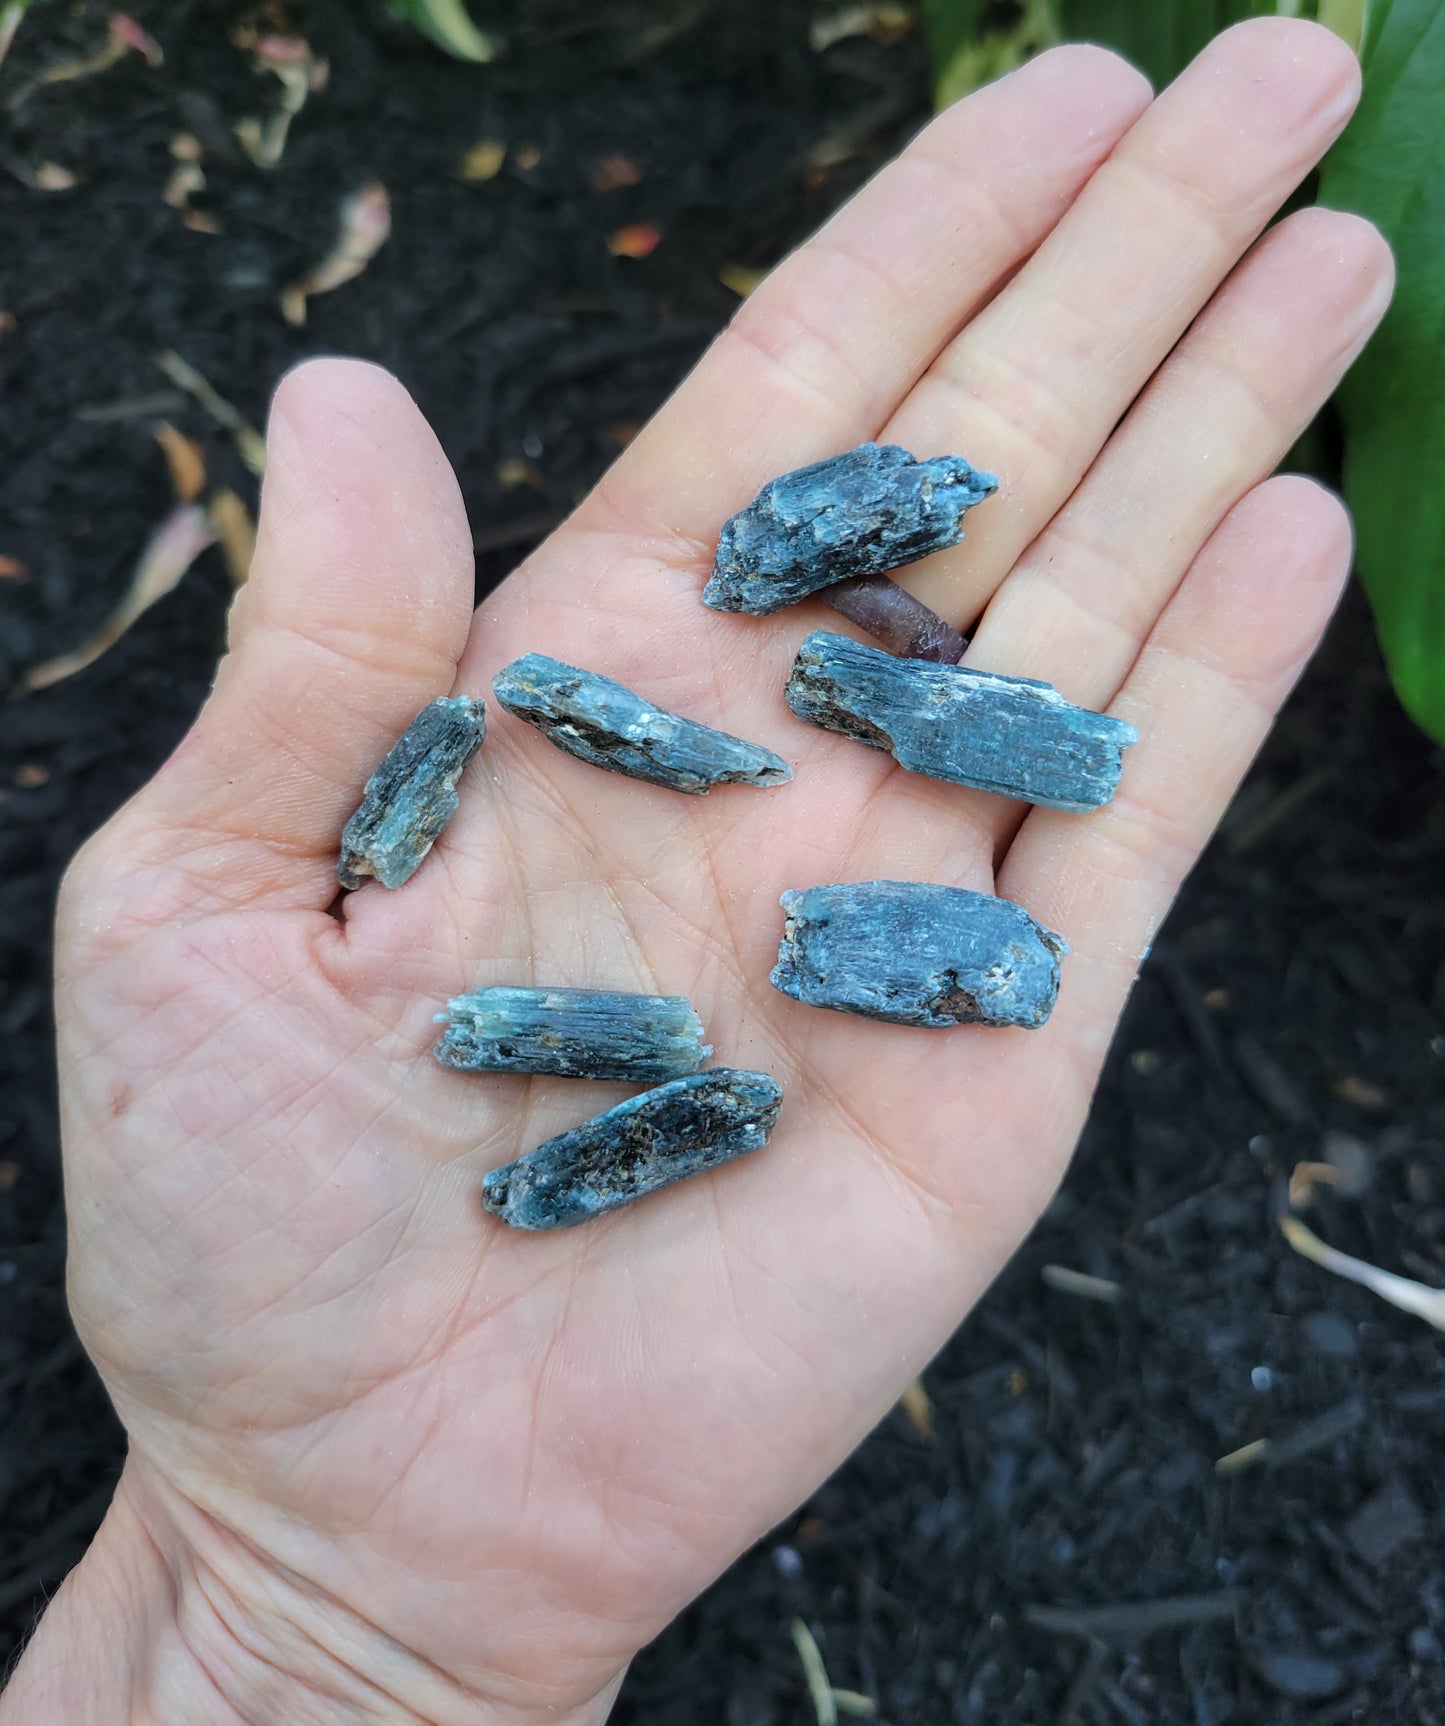 Tricolor Kyanite Specimen from Brazil, small (6 grams)